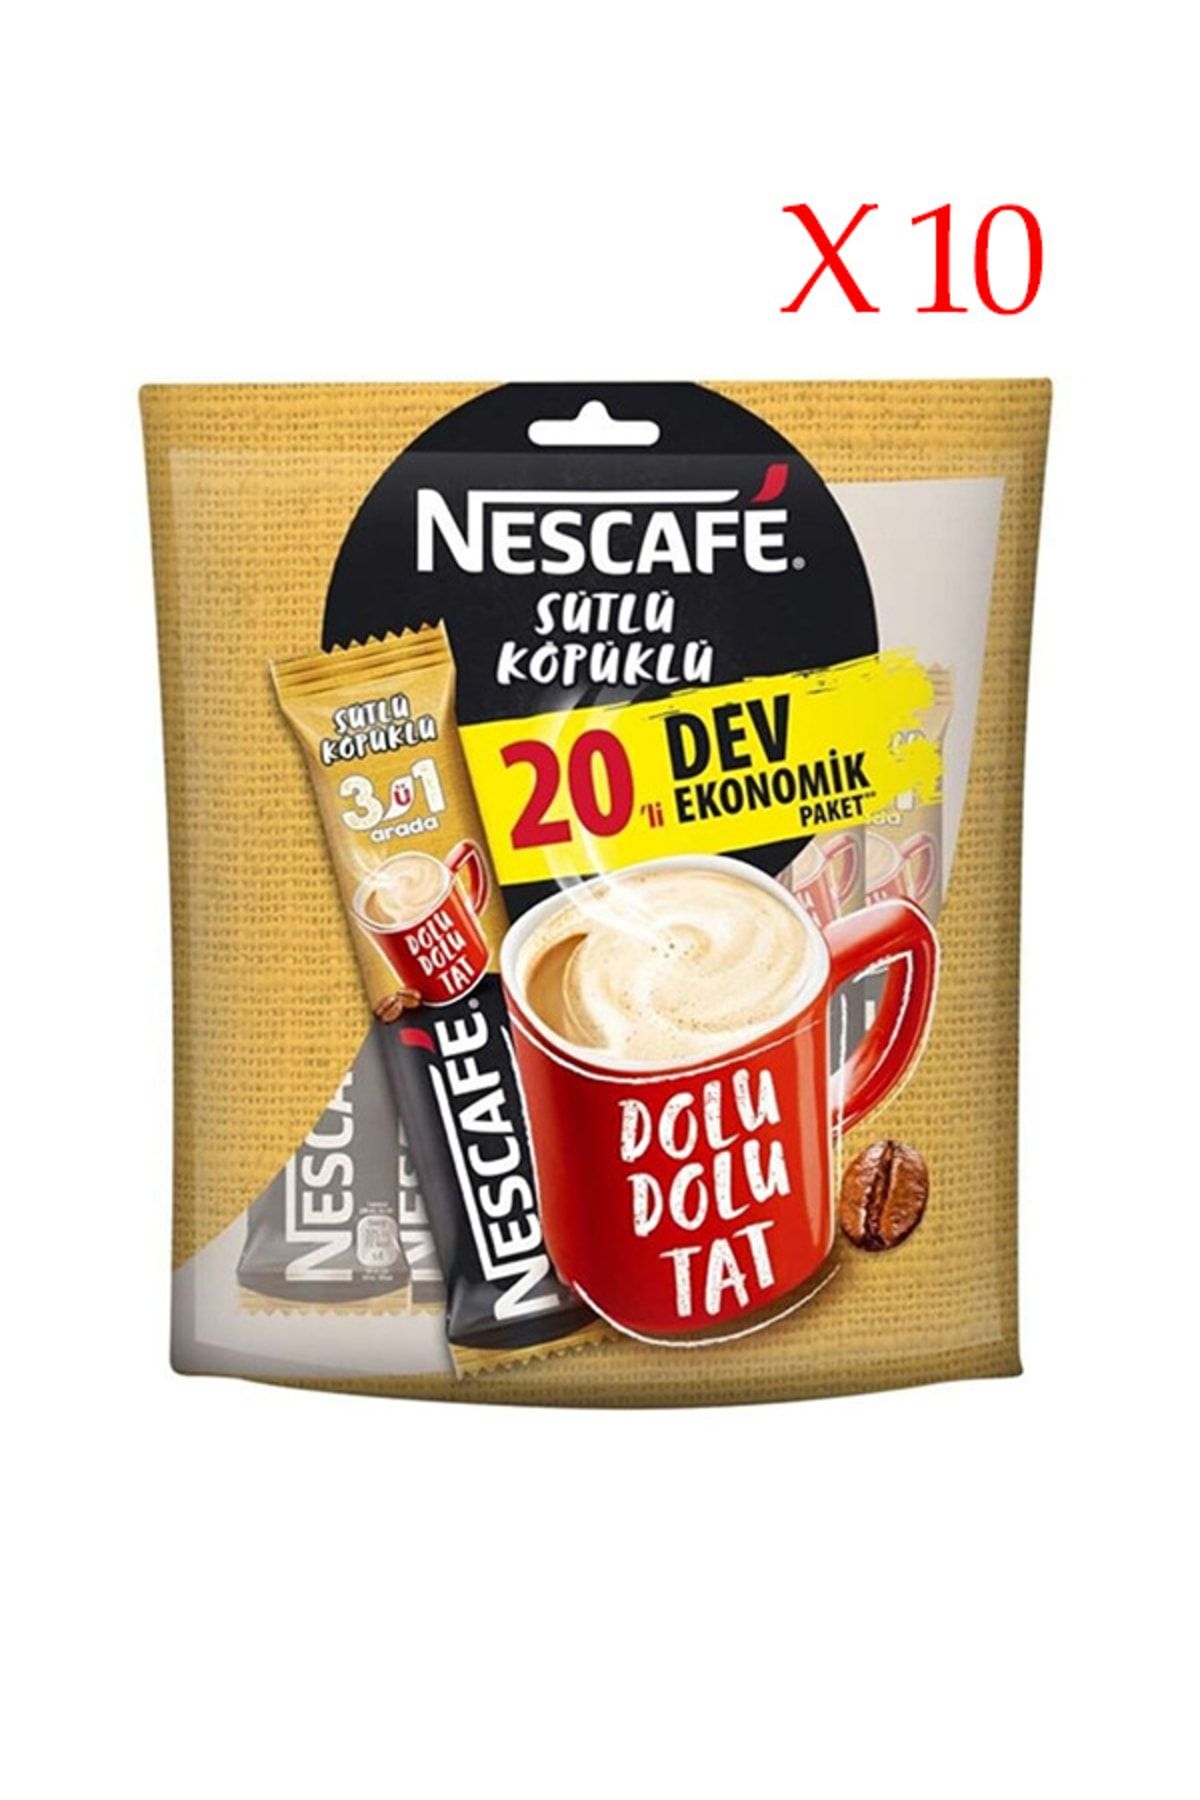 Nescafe Sütlü Köpüklü 3'ü 1 Arada 20'li Dev Ekonomik Paket